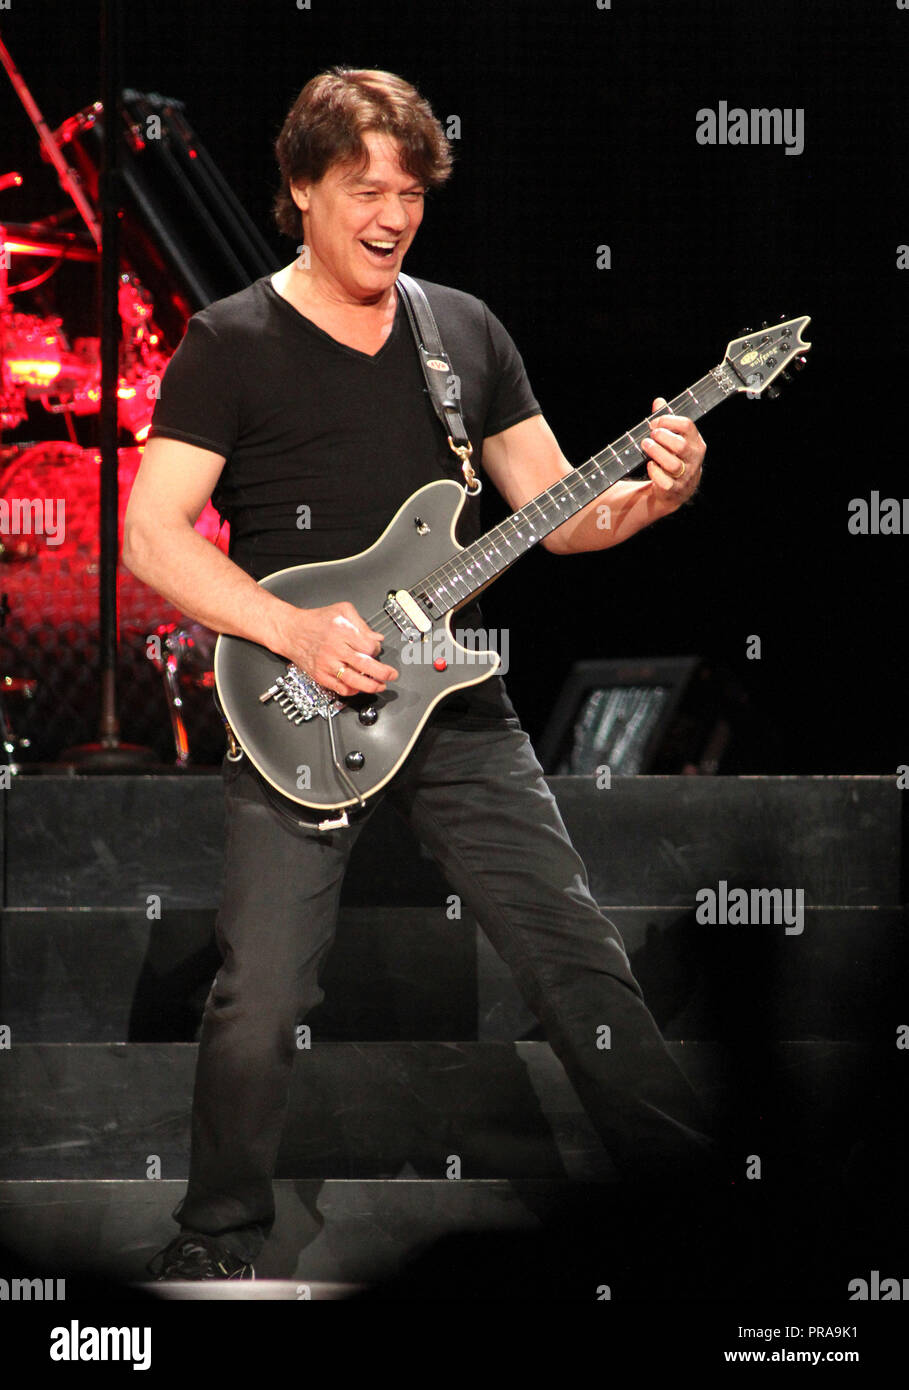 Eddie Van Halen with Van Halen performs in concert at the BankAtlantic Center in Sunrise, Florida on April 10, 2012. Stock Photo